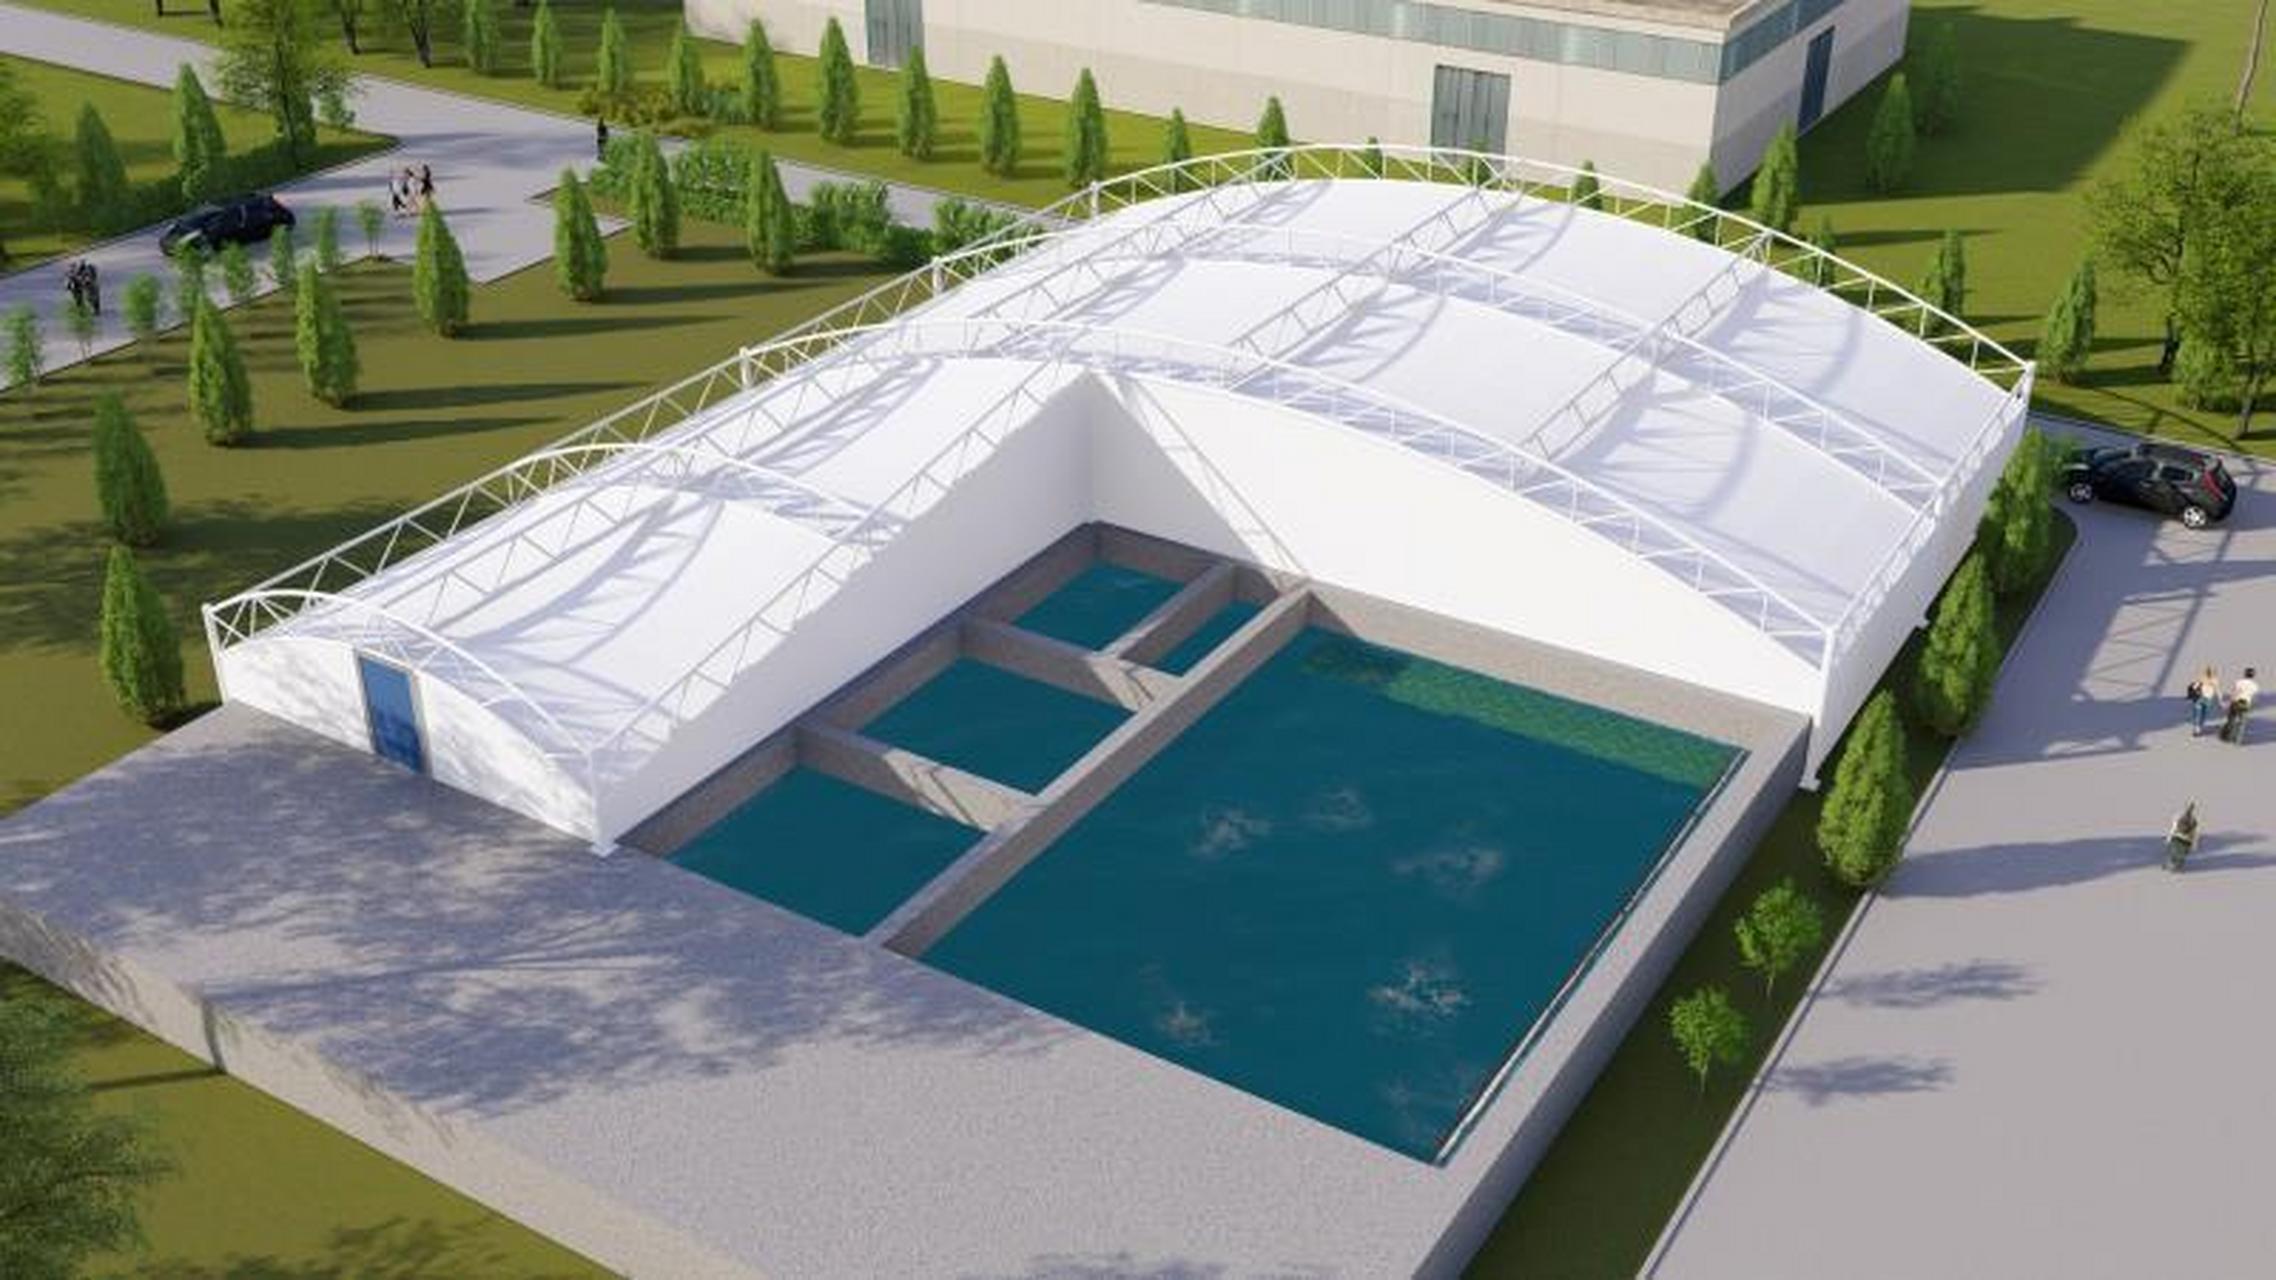 污水池加盖反吊膜是一种创新的污水池加盖工艺,它不仅具有优越的密封